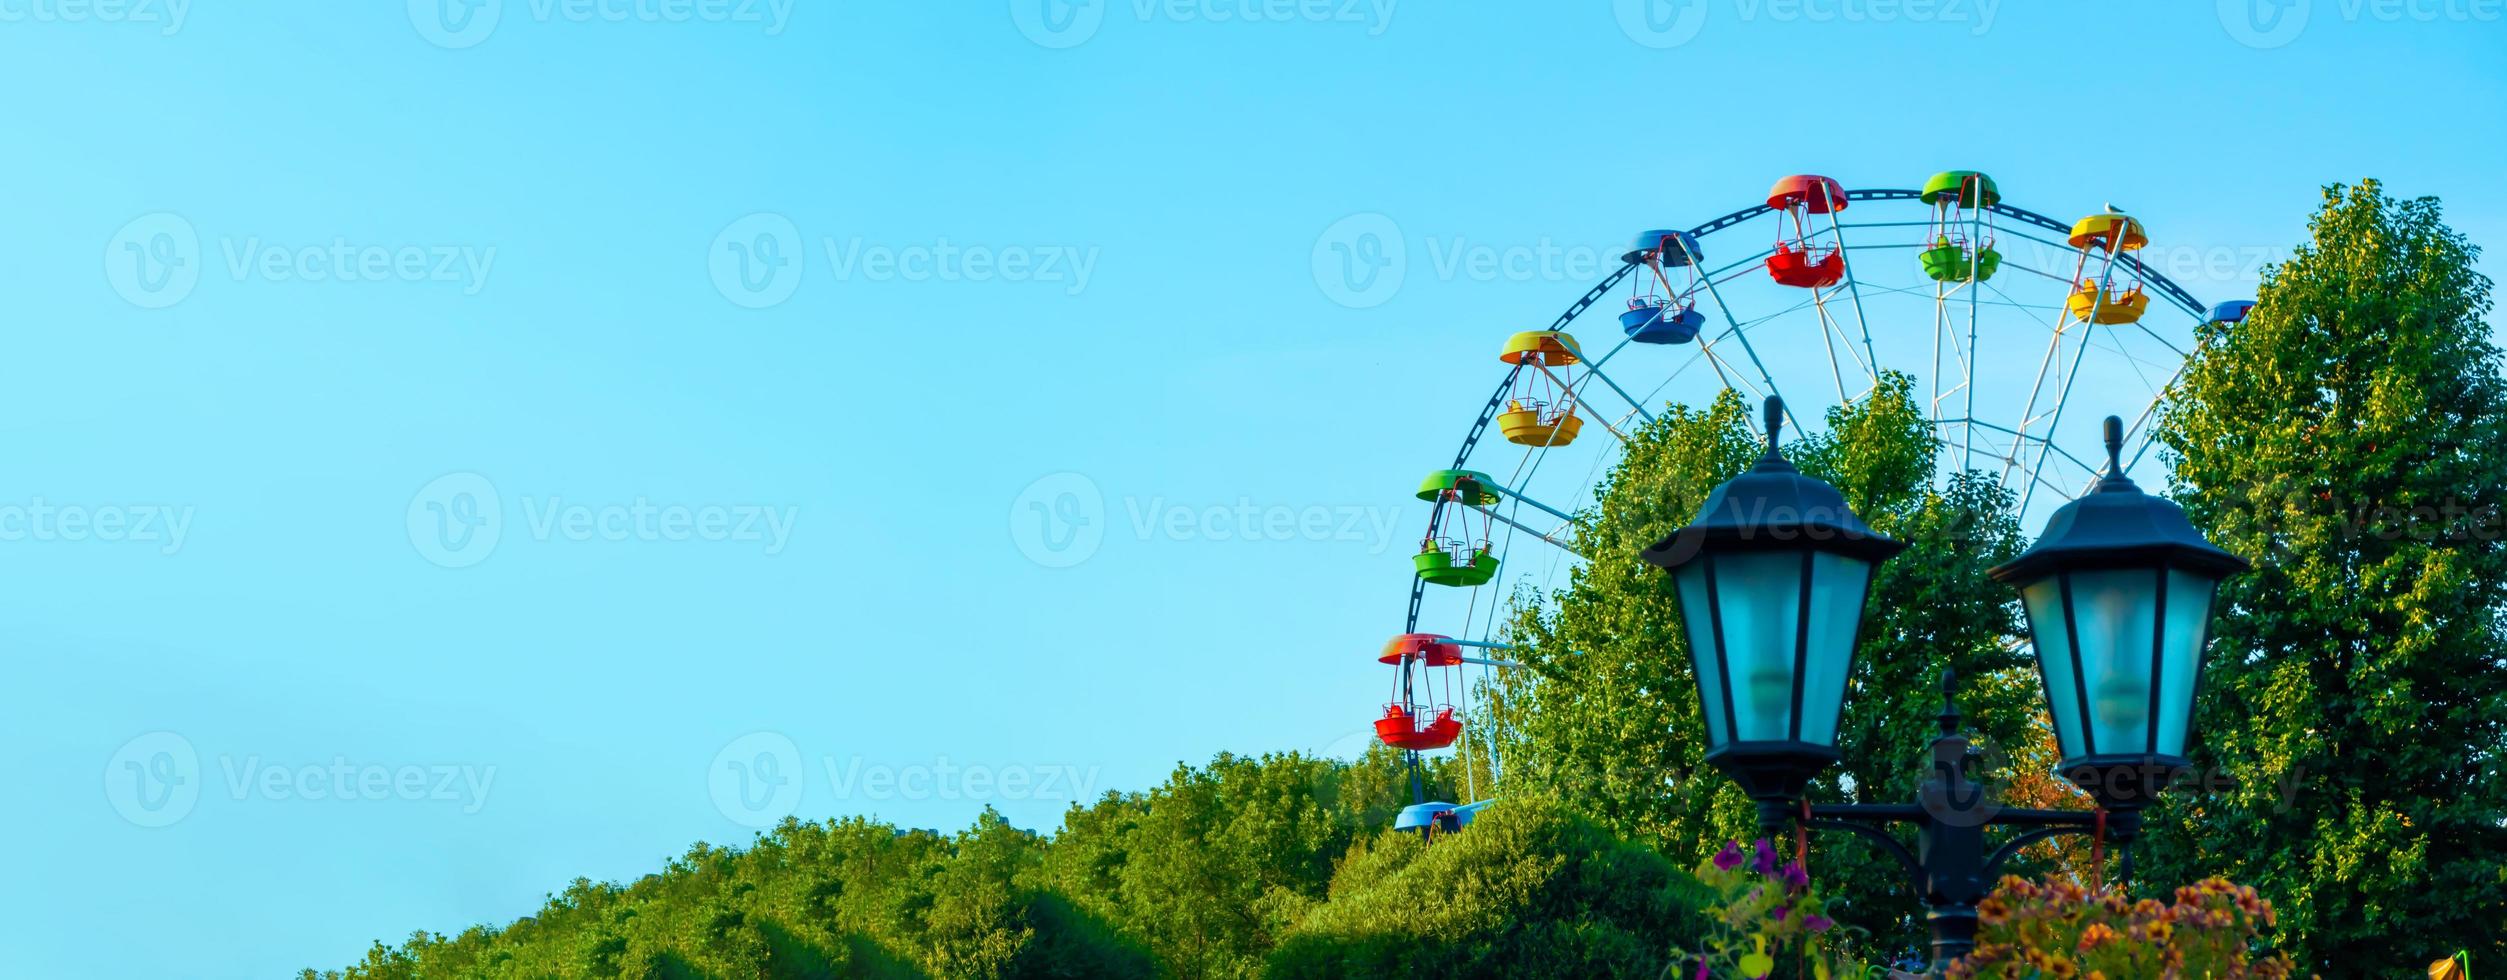 landskap av en nöjespark med lykta dekorerad med blommor bakgrund toppen av ett pariserhjul visar ovanför trädtopparna mot en blå himmel. foto